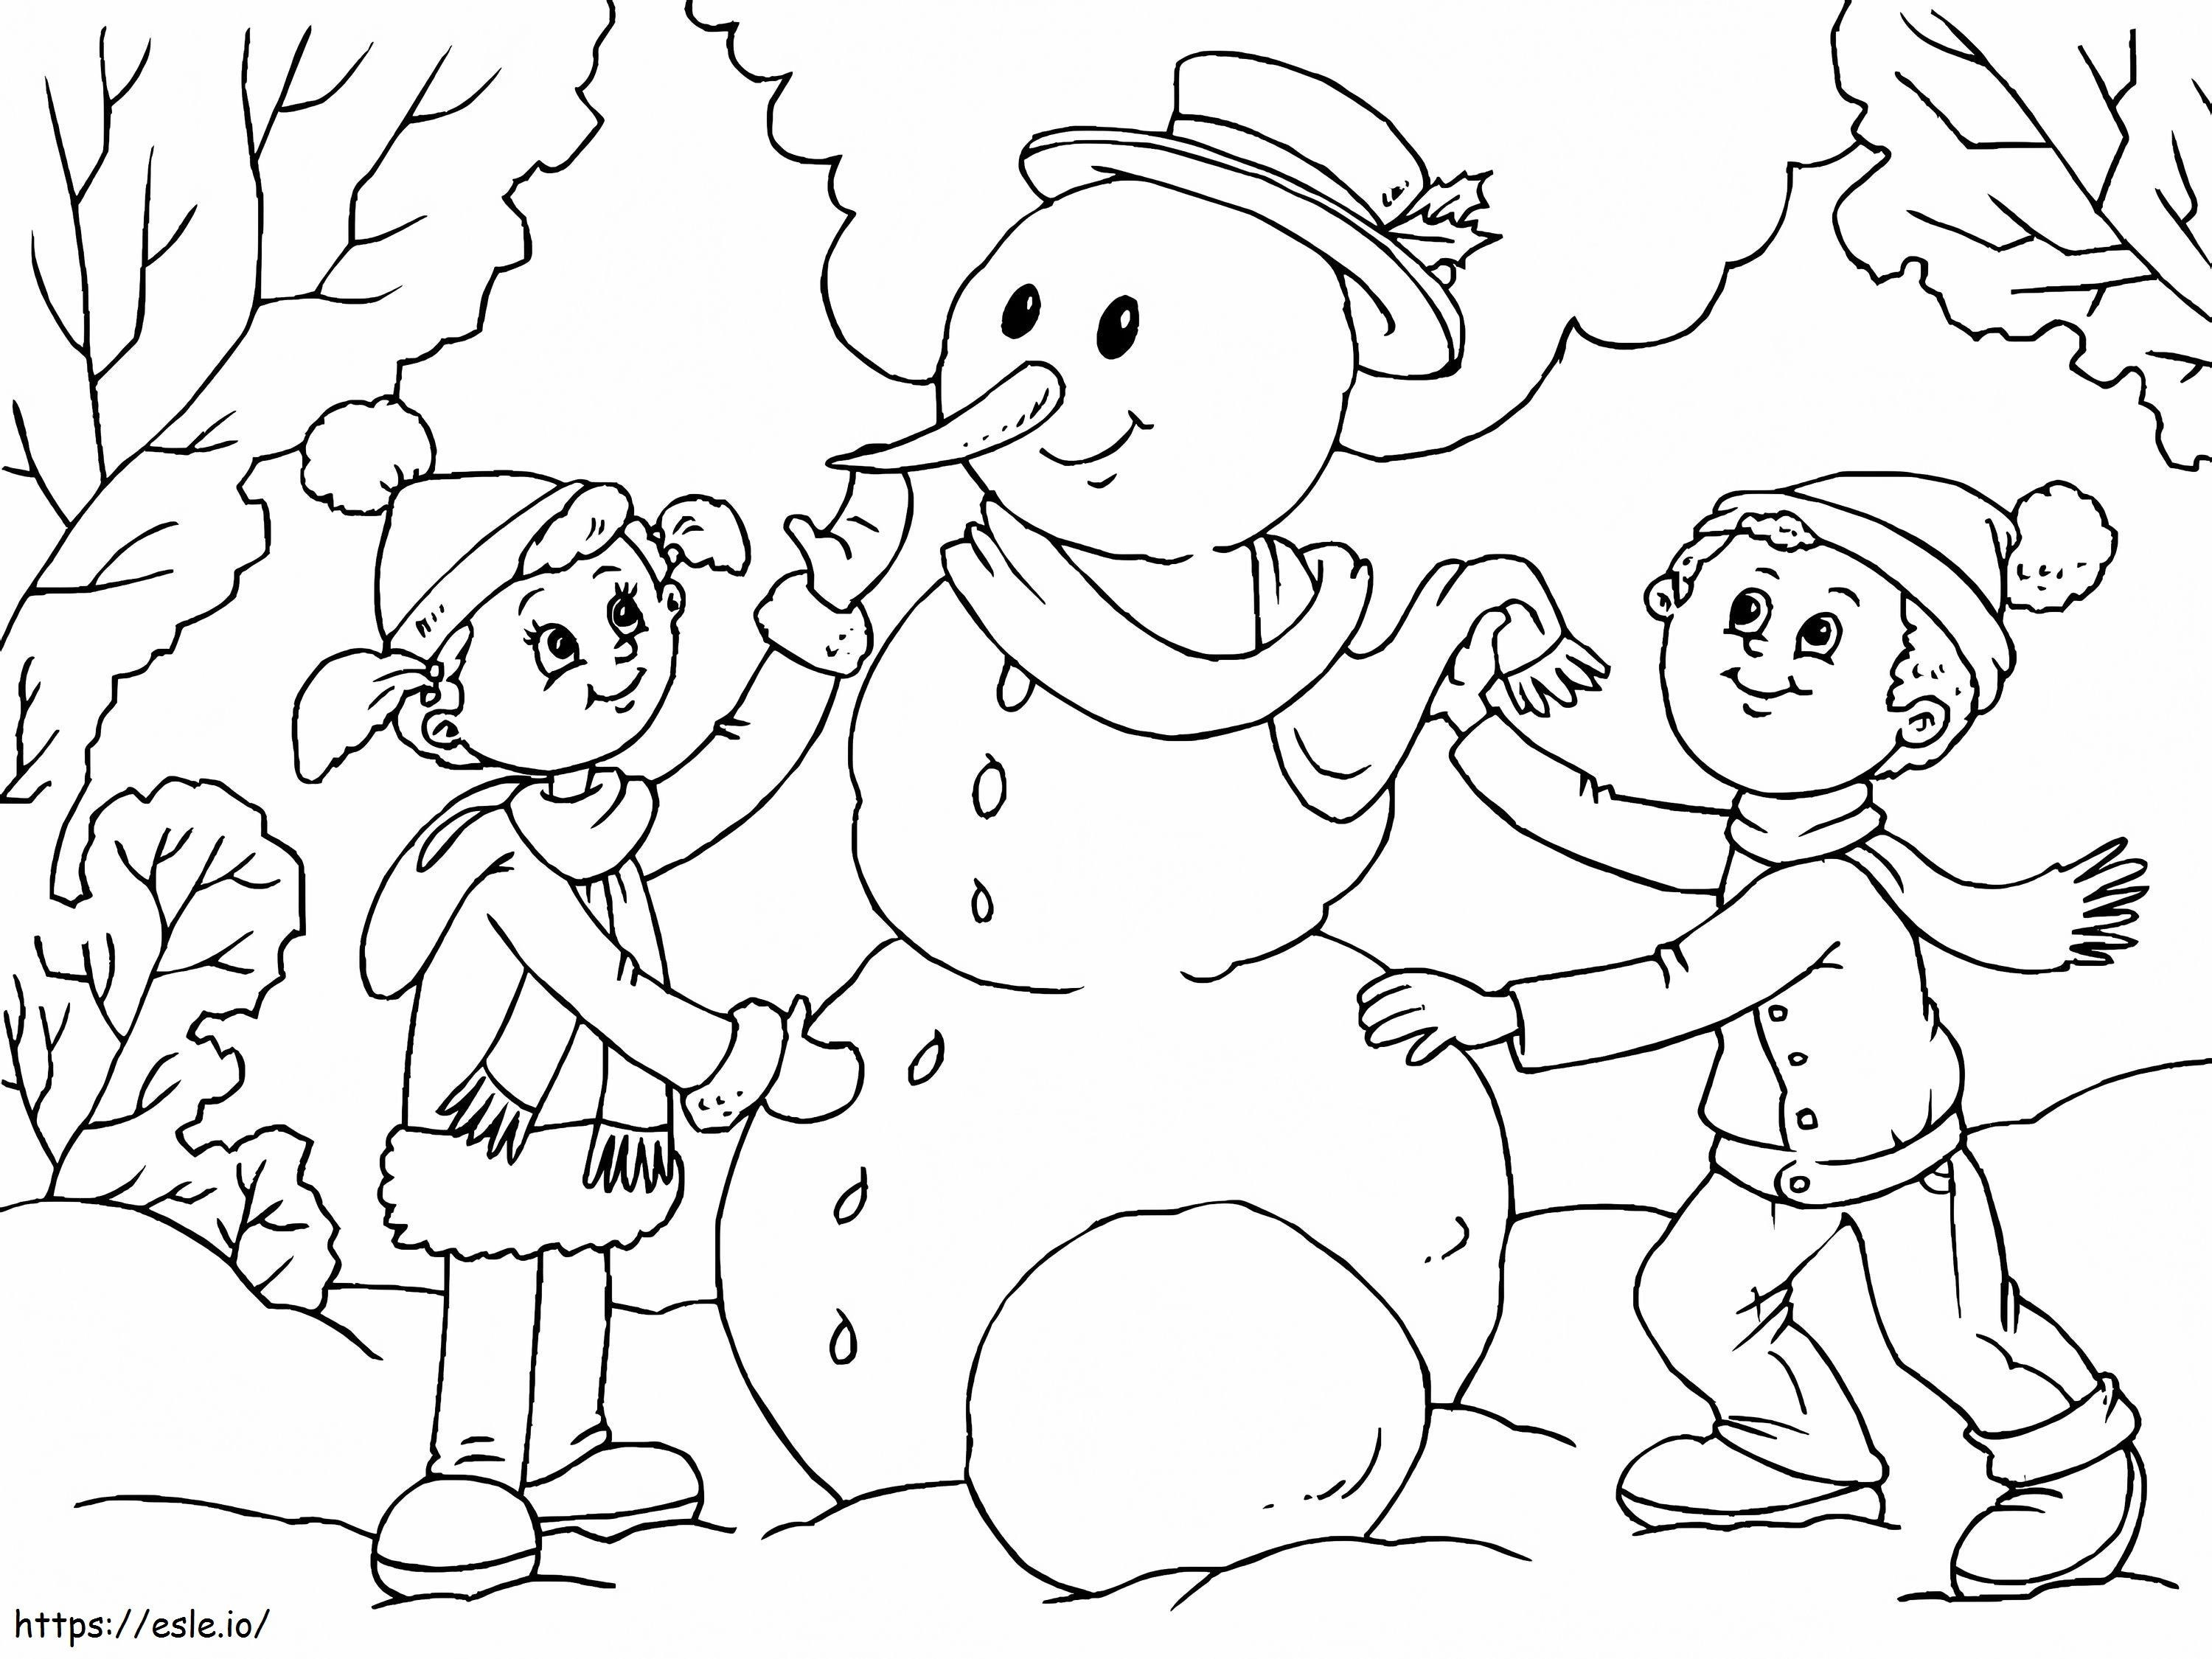 Coloriage 1528683614 Construire un bonhomme de neige4 à imprimer dessin